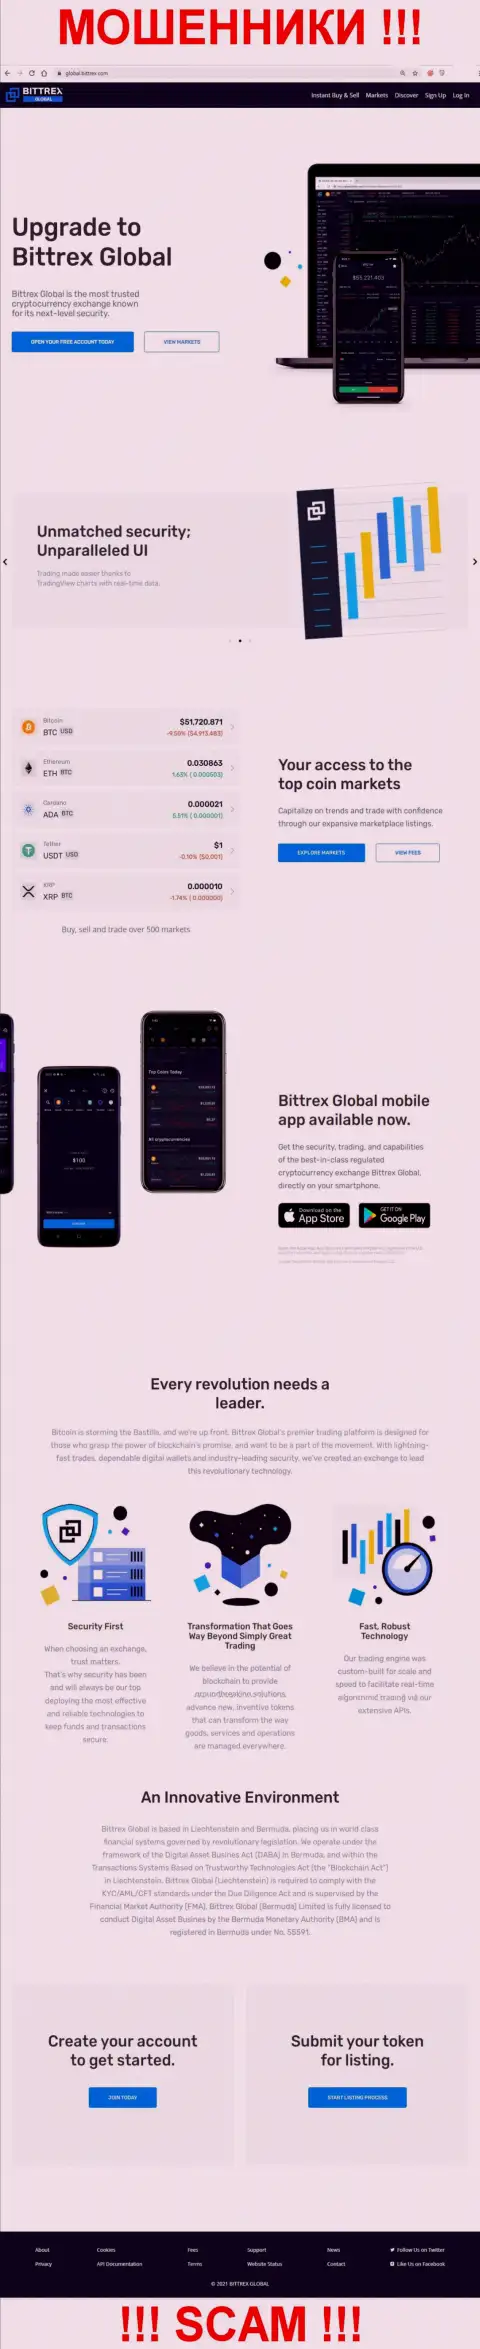 Онлайн-сервис мошенников Bittrex